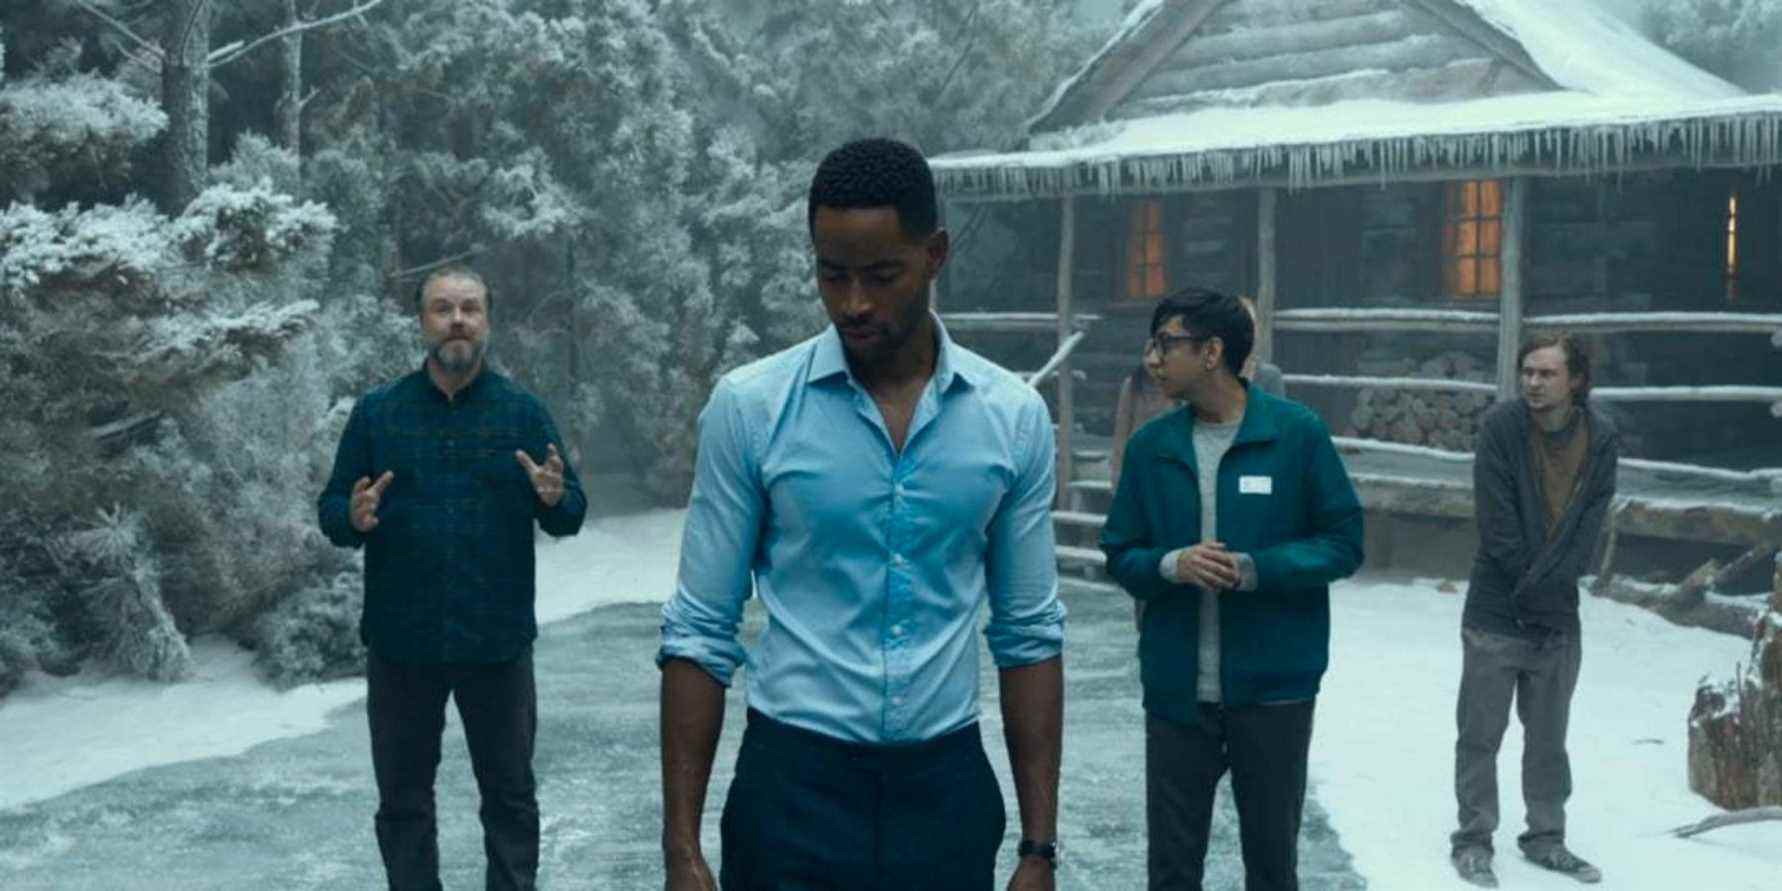 Les personnages principaux dans une cabane d'hiver dans le film Escape Room 2019